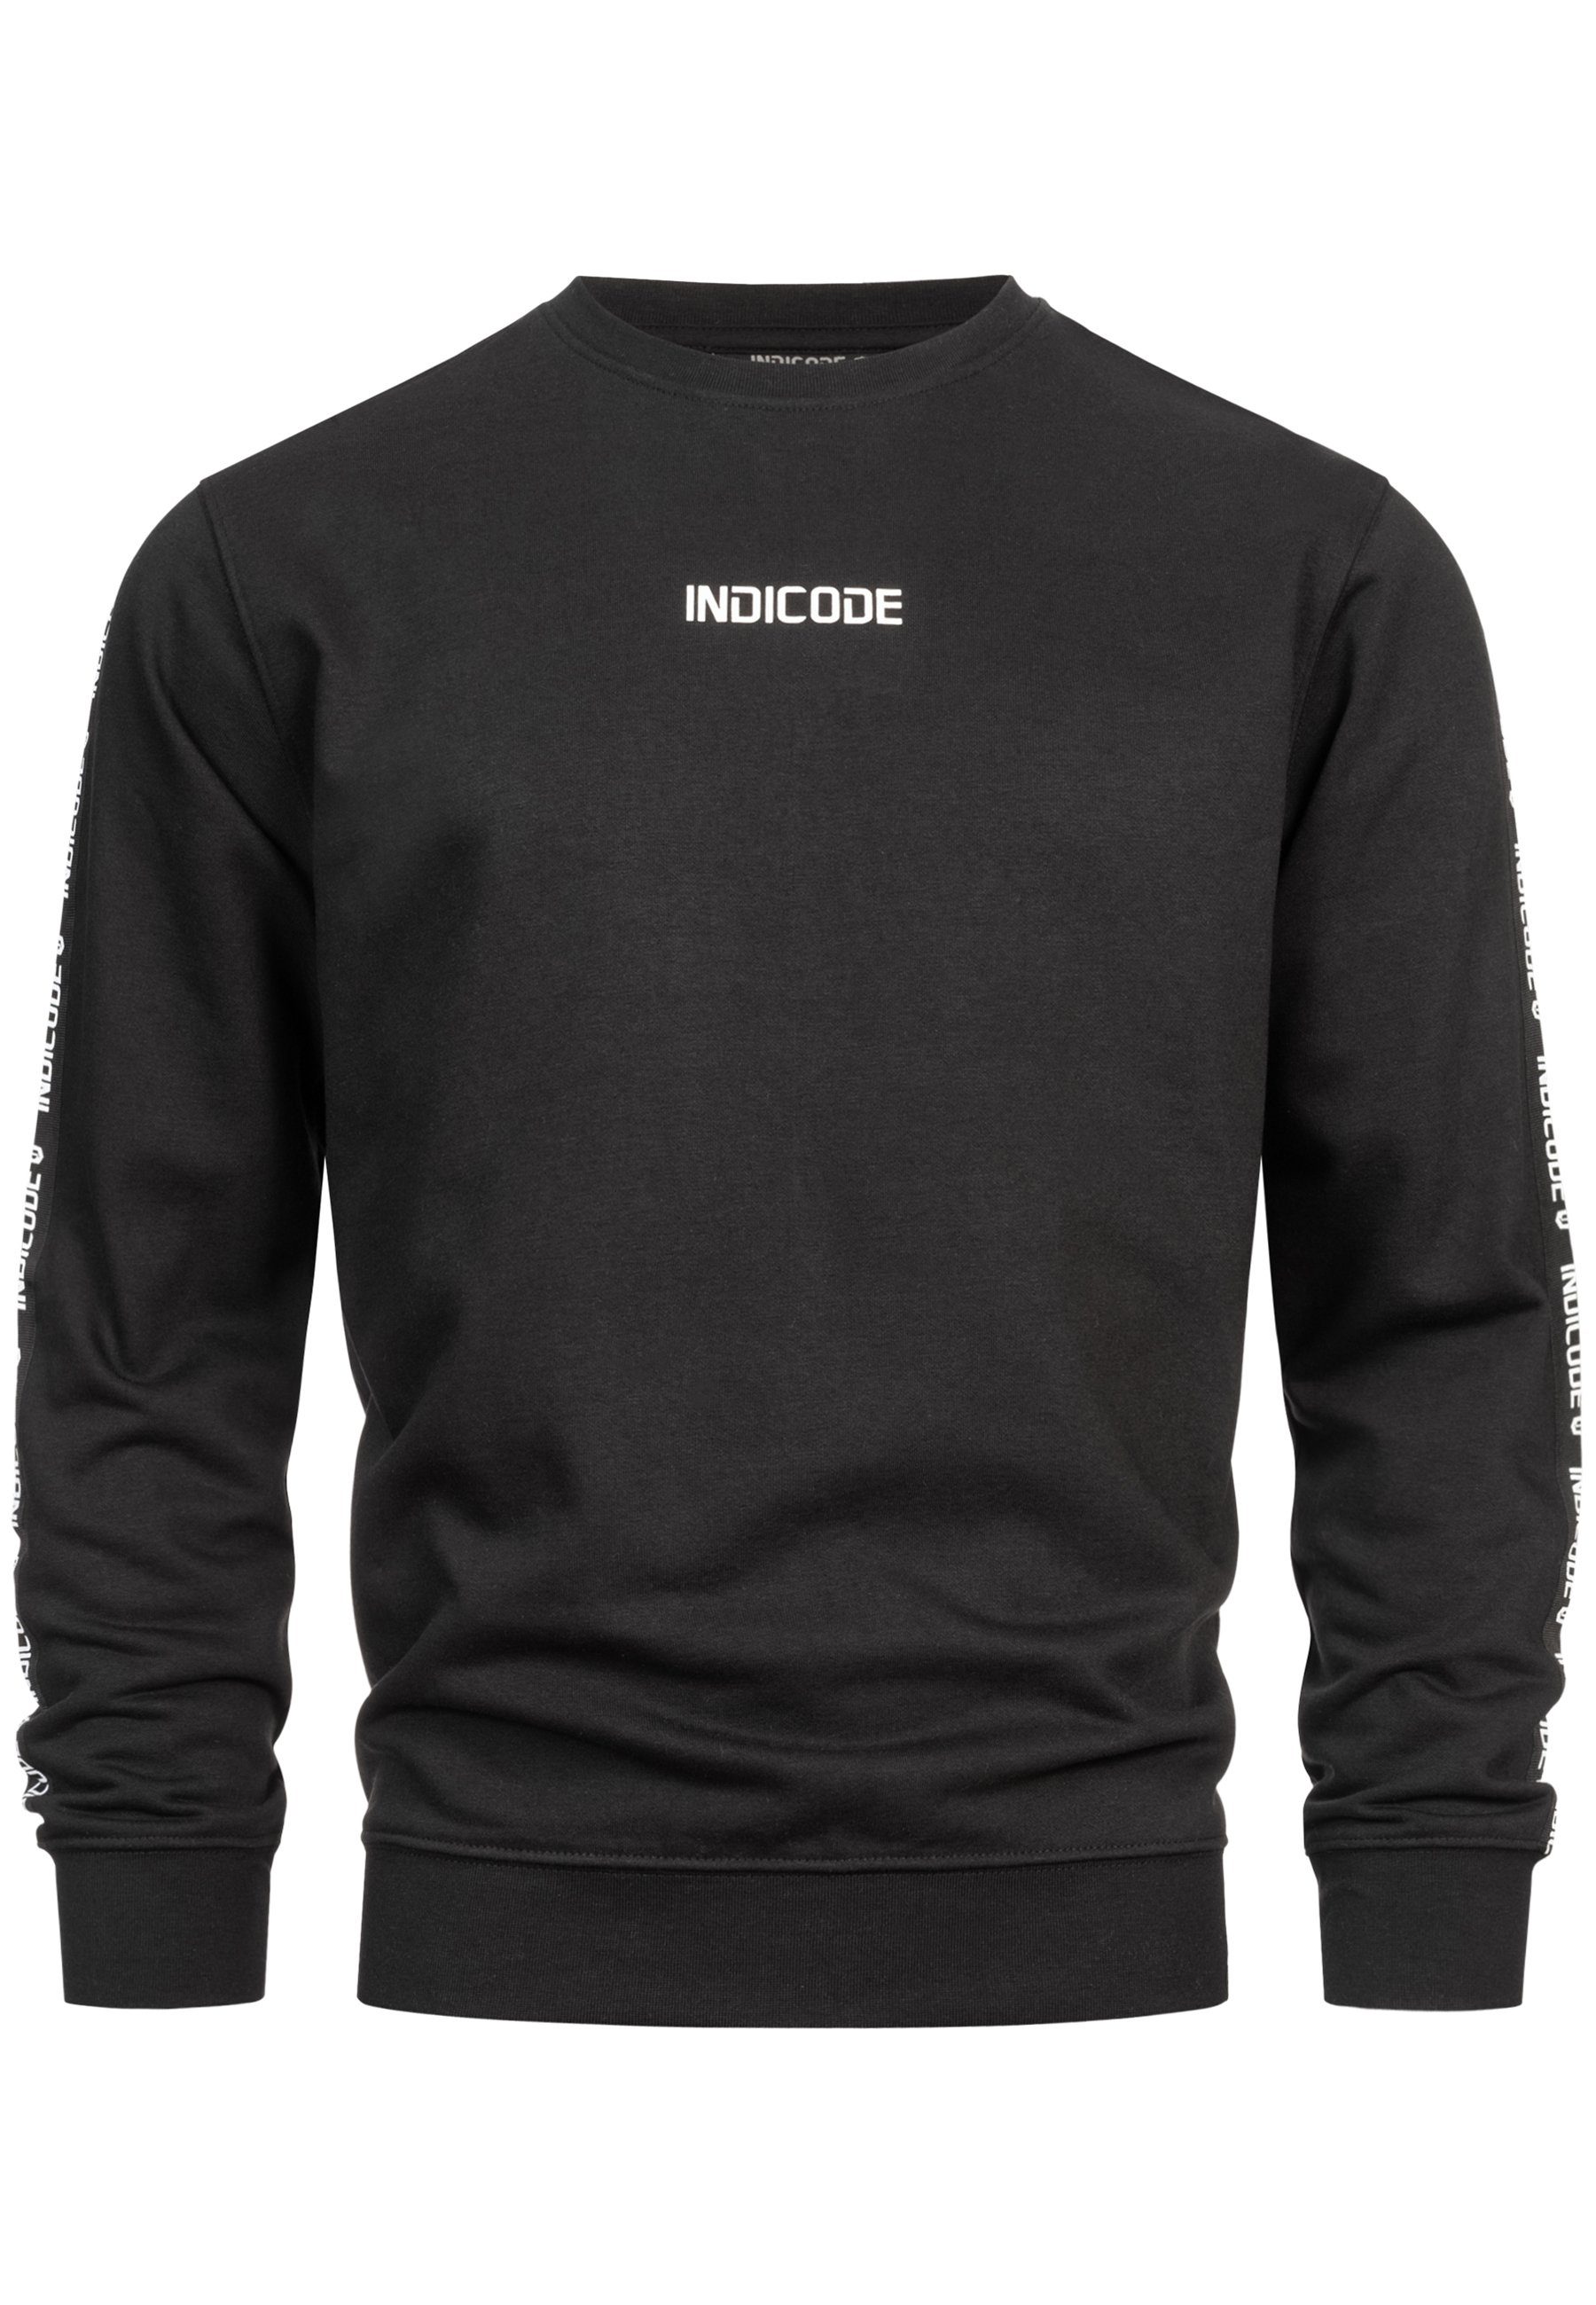 INKorbin Indicode Sweatshirt Black